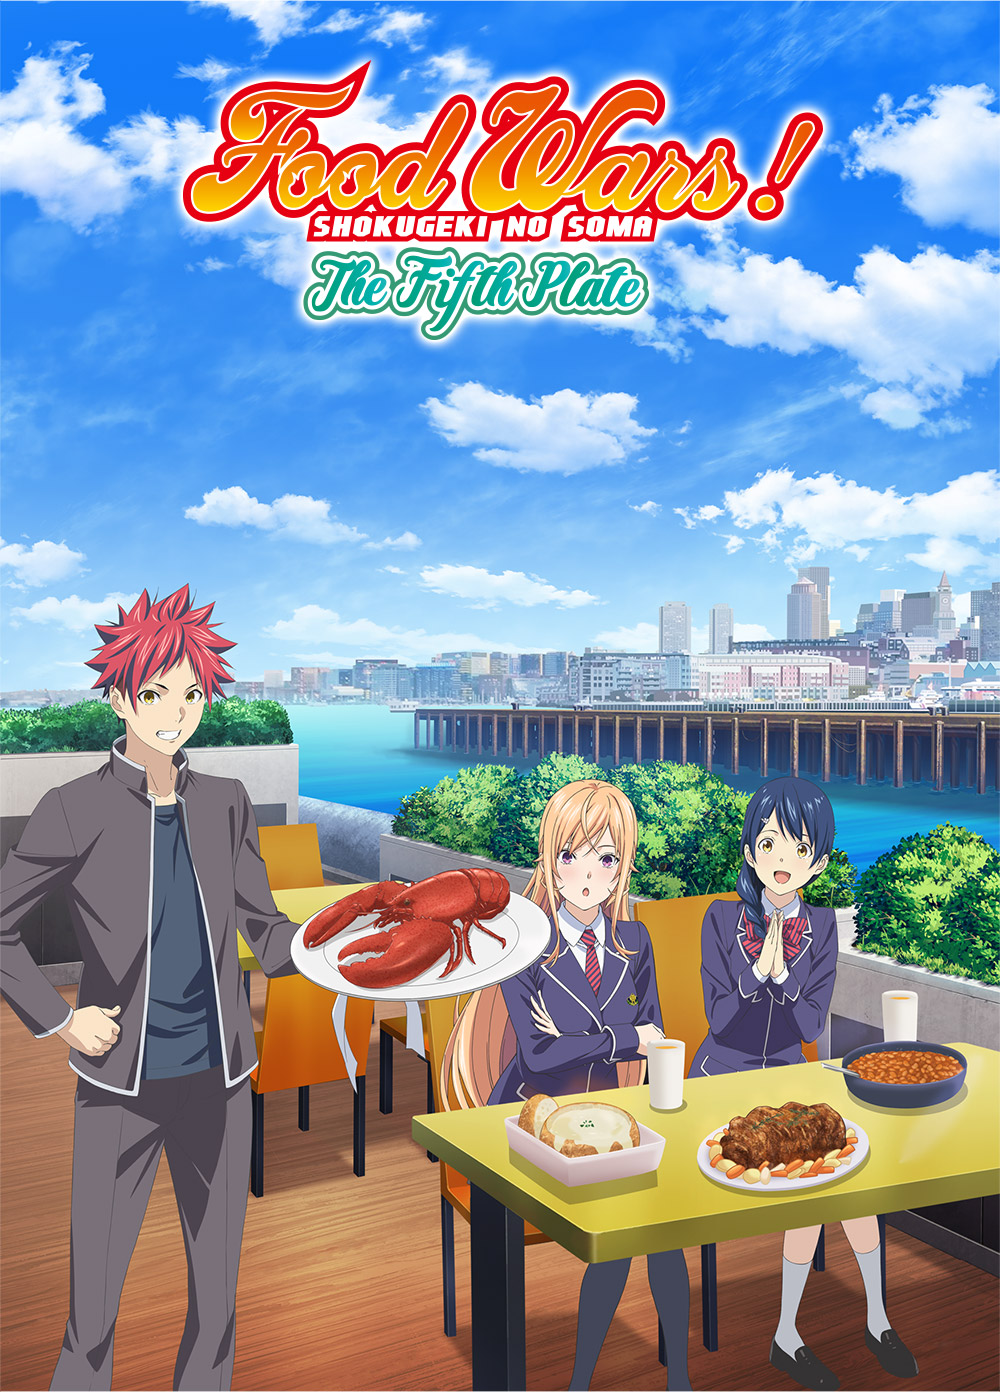 Food Wars Season 5, Shokugeki no Soma: Gou no Sara